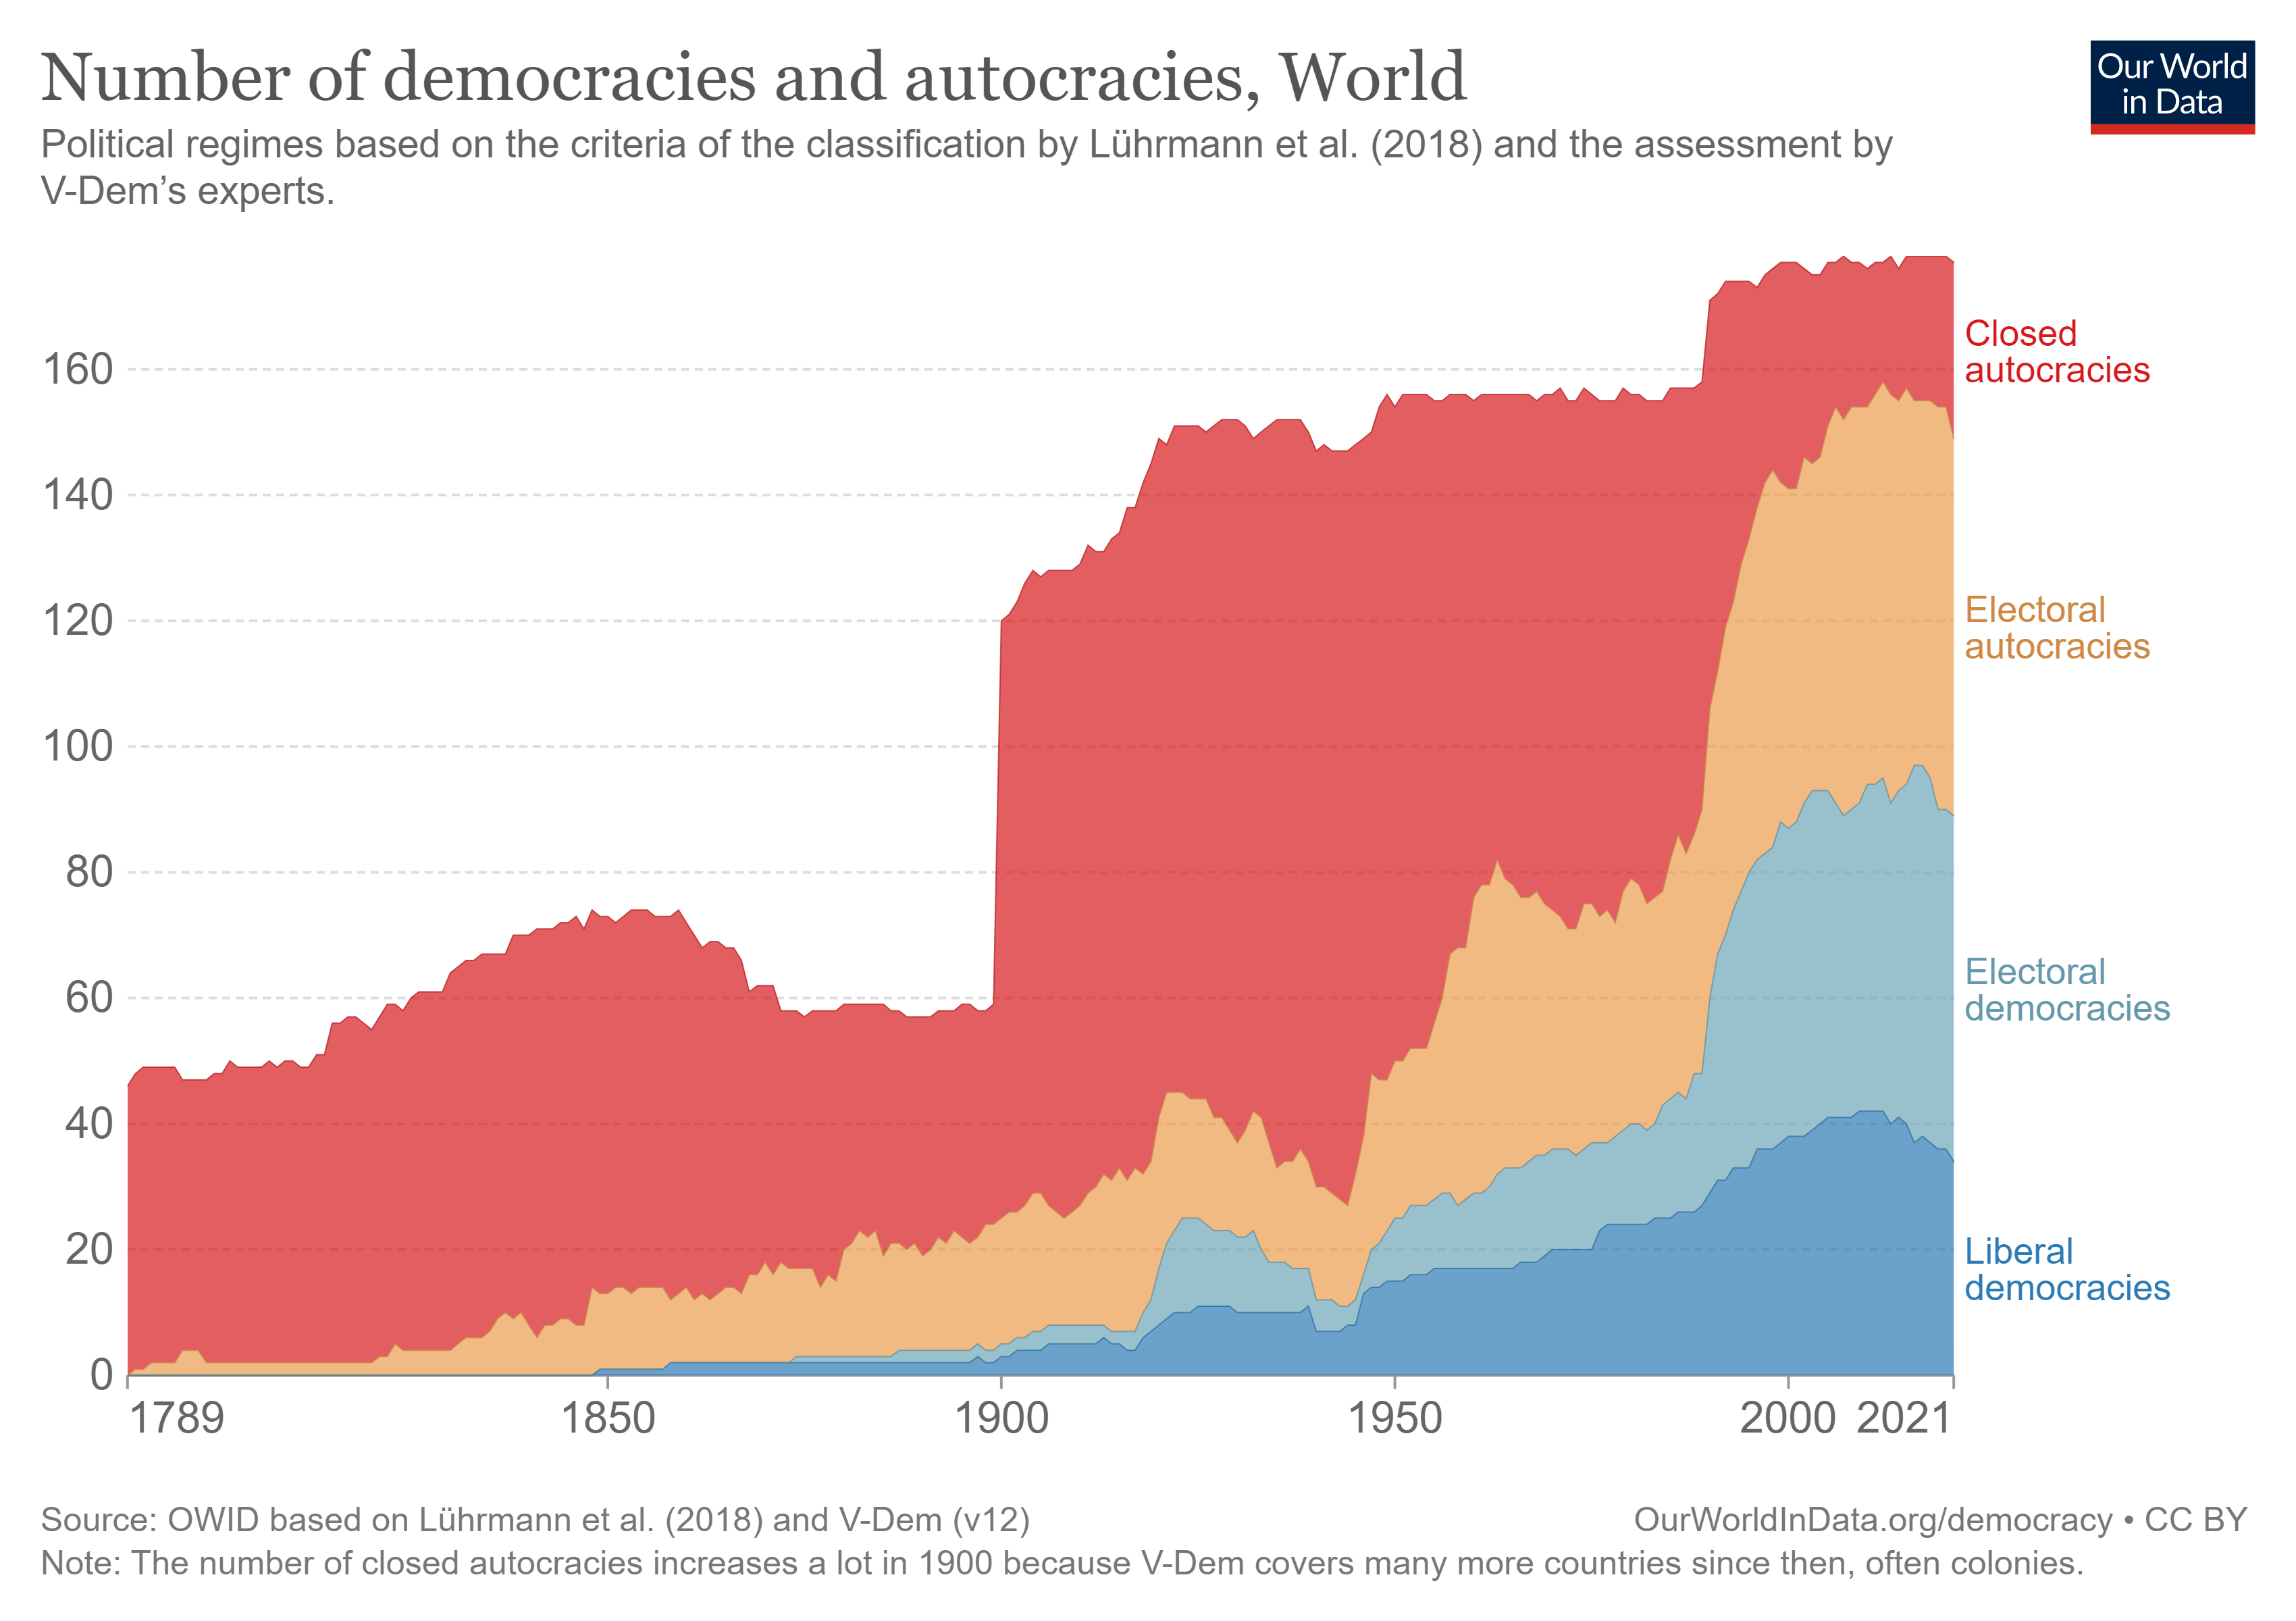 Is de wereld minder democratisch aan het worden?